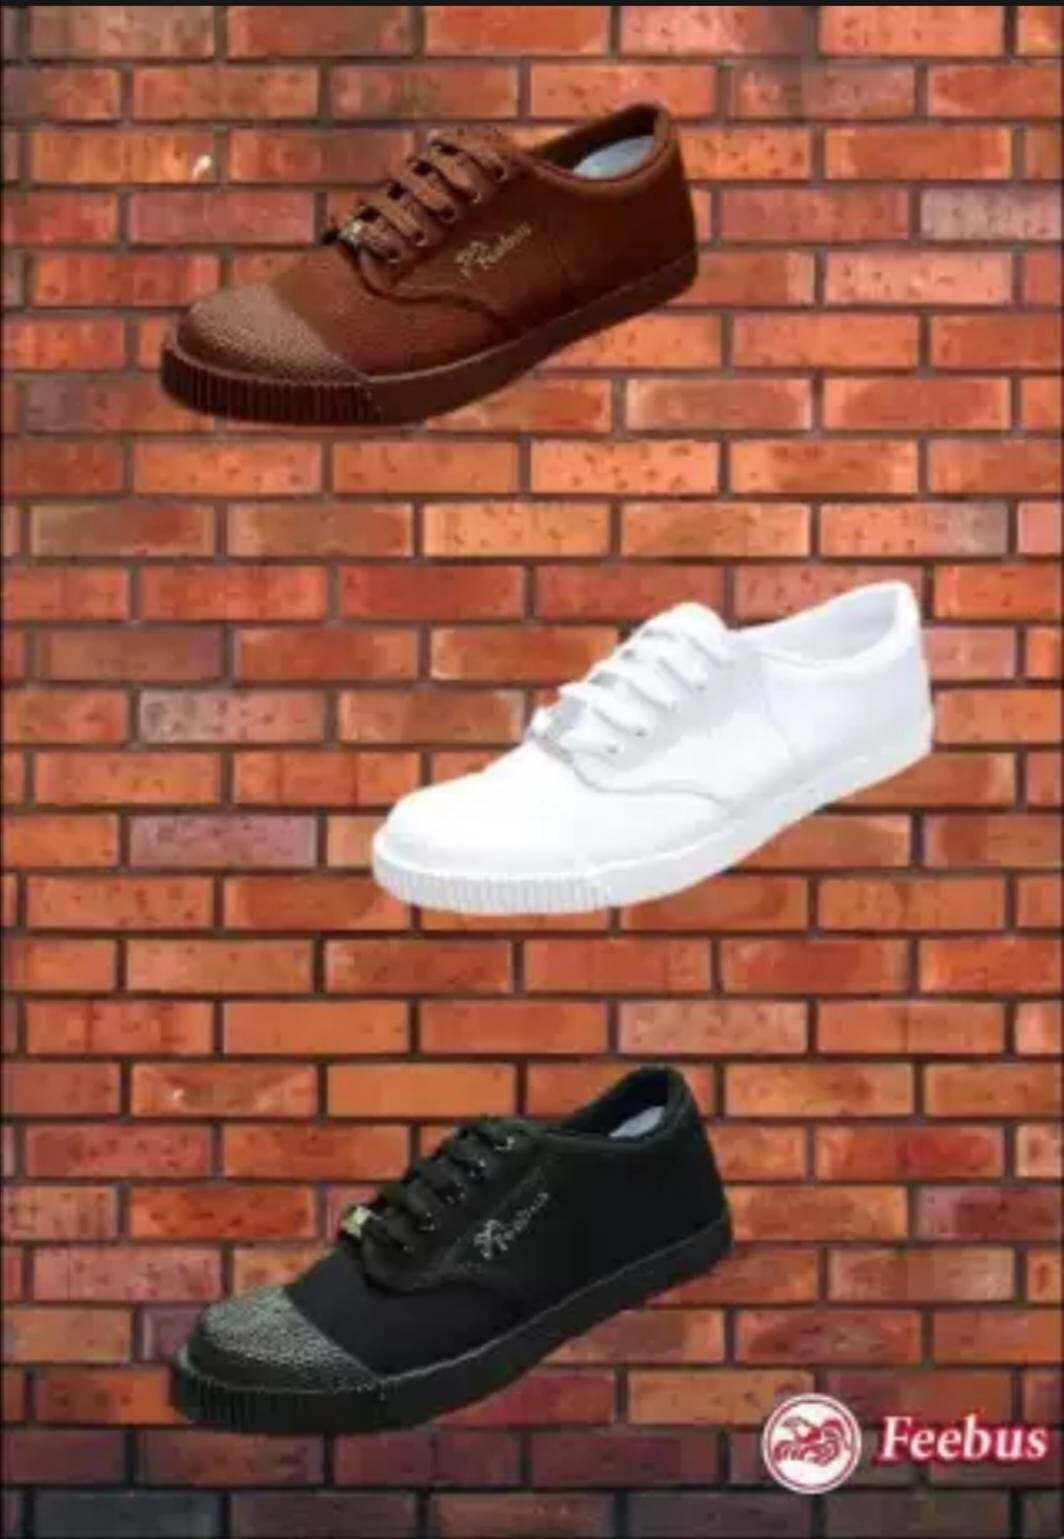 รองเท้าผ้าใบนักเรียน Feebus รุ่น FB 219